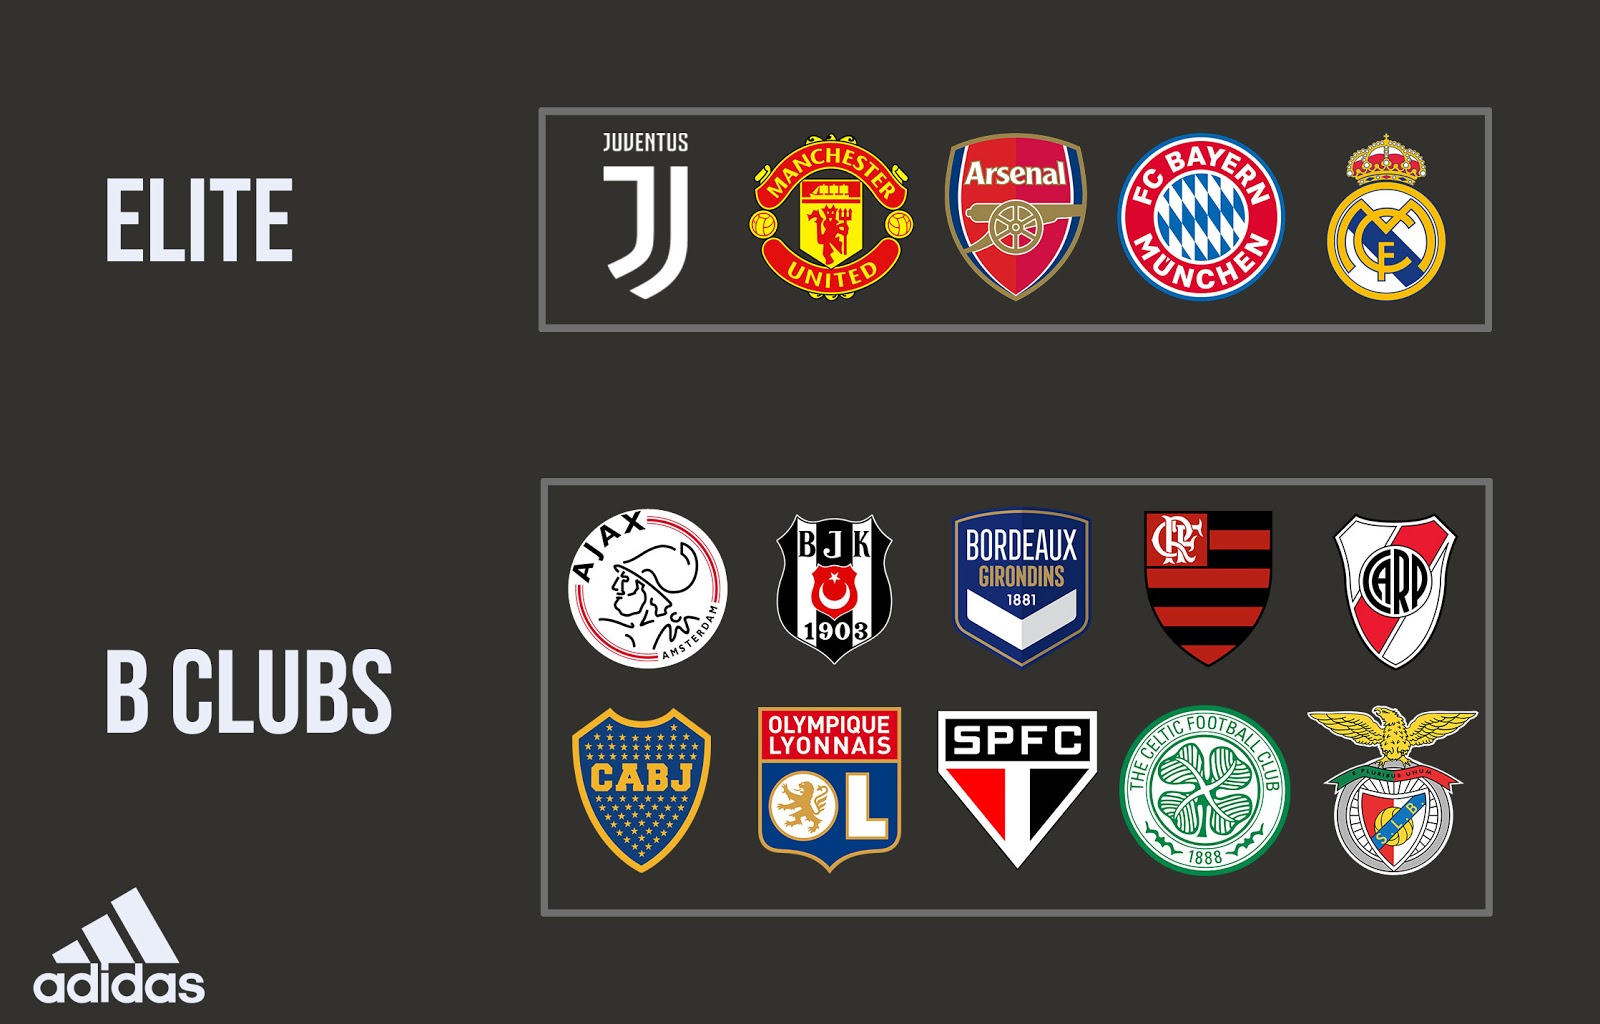 Flash begaan naaien Adidas Football Sponsorships Ranking - "All" Elite, B Teams & Premium Clubs  Of The German Brand - Footy Headlines